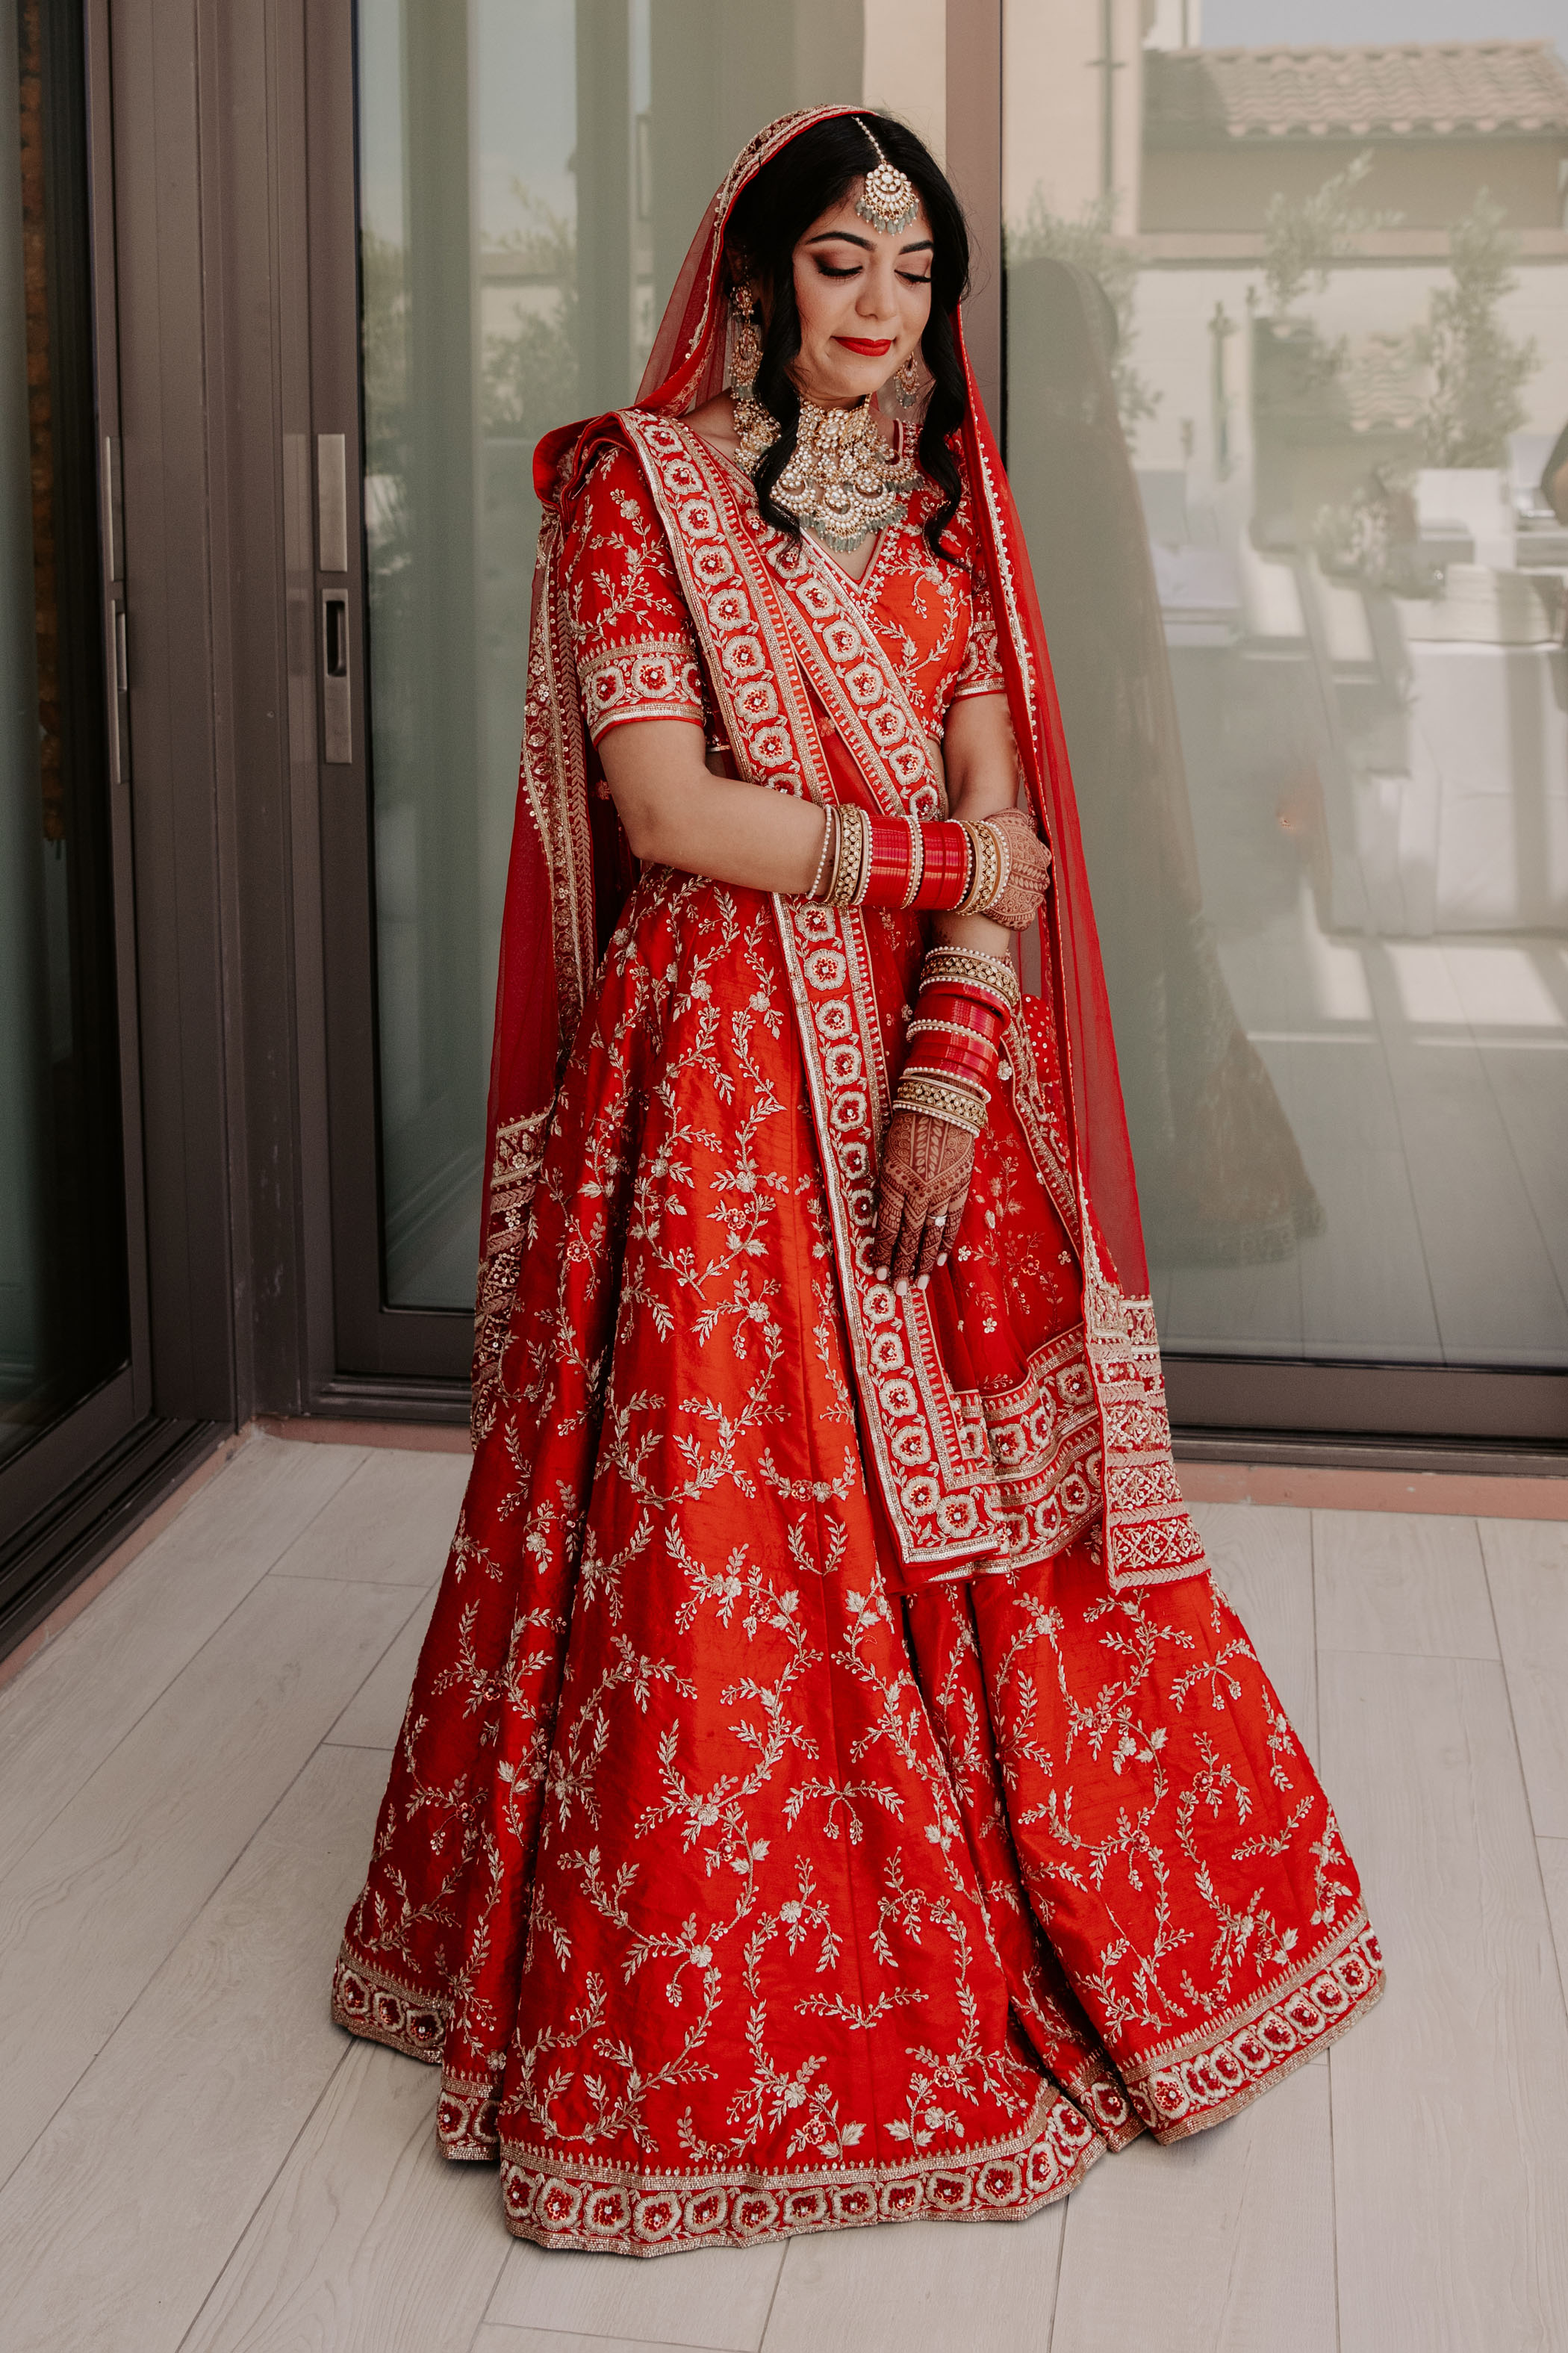 Boho Glam Inspired Indian Wedding Bride